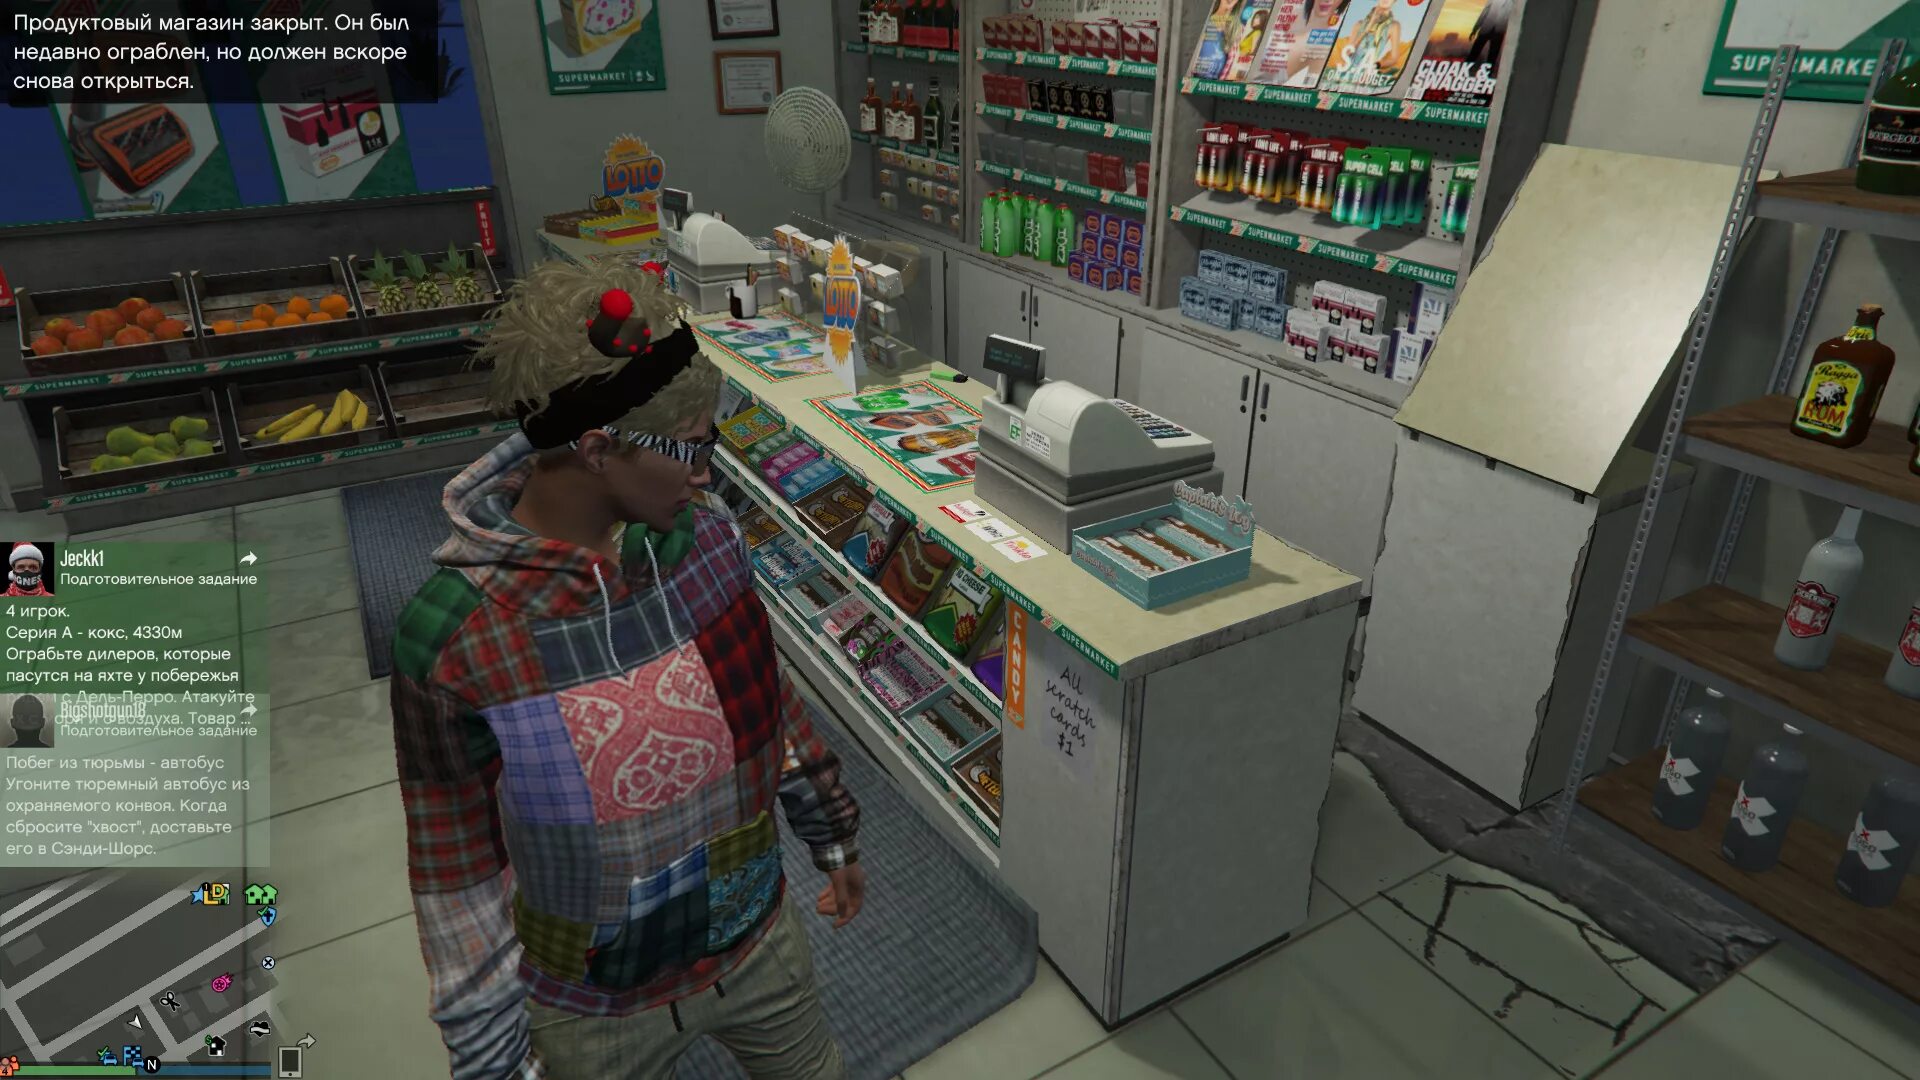 Магазины которые можно ограбить в гта 5. GTA 5 магазины для ограбления. Ограбления люберельный магазин в ГТА 5. Ограбление магазина. Игра про ограбление магазина.